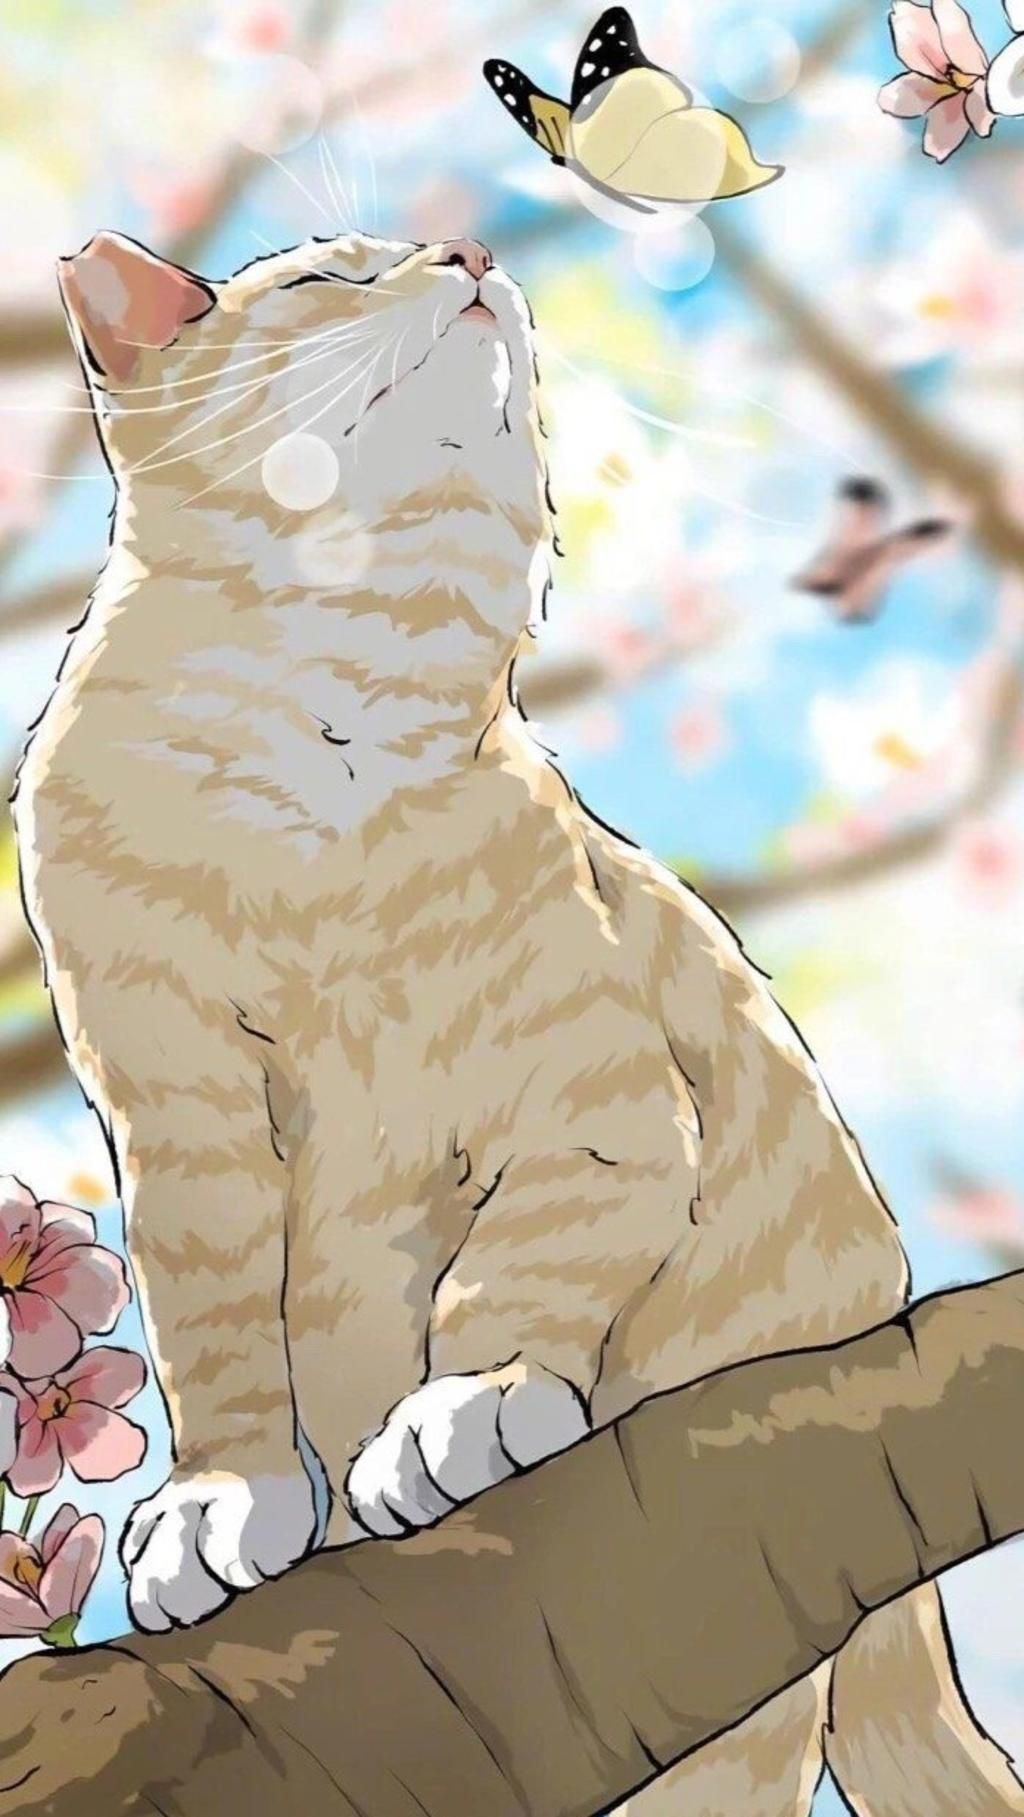 Hãy thử vẽ một chú mèo anime dễ thương như trong hình và tạo nên một tác phẩm nghệ thuật tuyệt vời cho riêng mình. Với một chú mèo anime đáng yêu và đầy sáng tạo, tất cả mọi người đều sẽ bị thu hút bởi nét đặc biệt của nó.